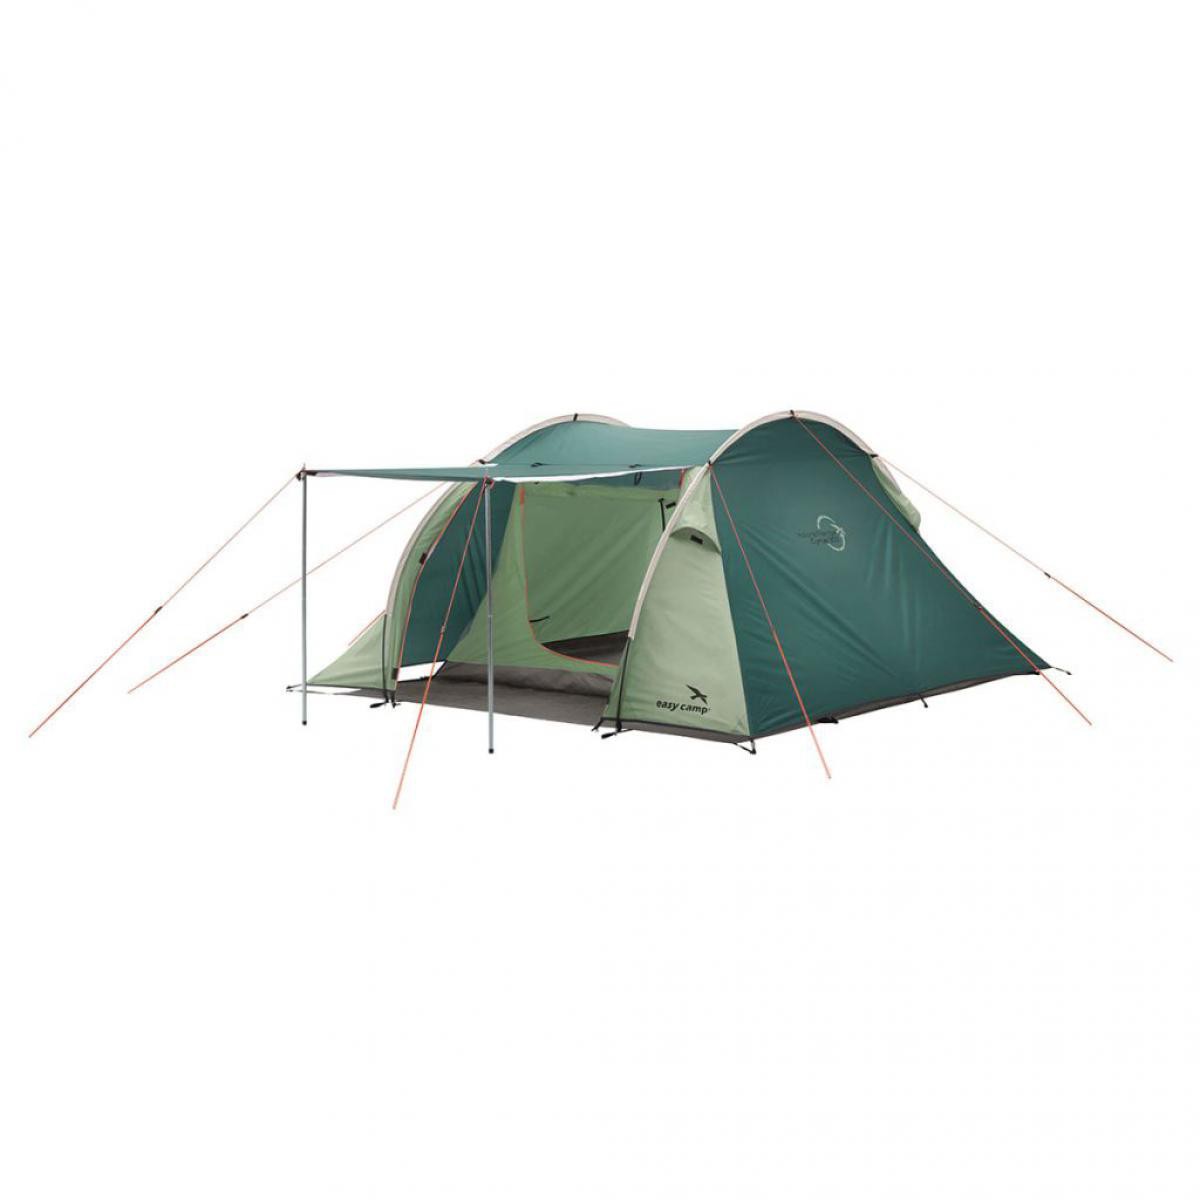 Easy Camp - Easy Camp Tente Cyrus 300 Vert 120280 - Pergolas et Tonnelles